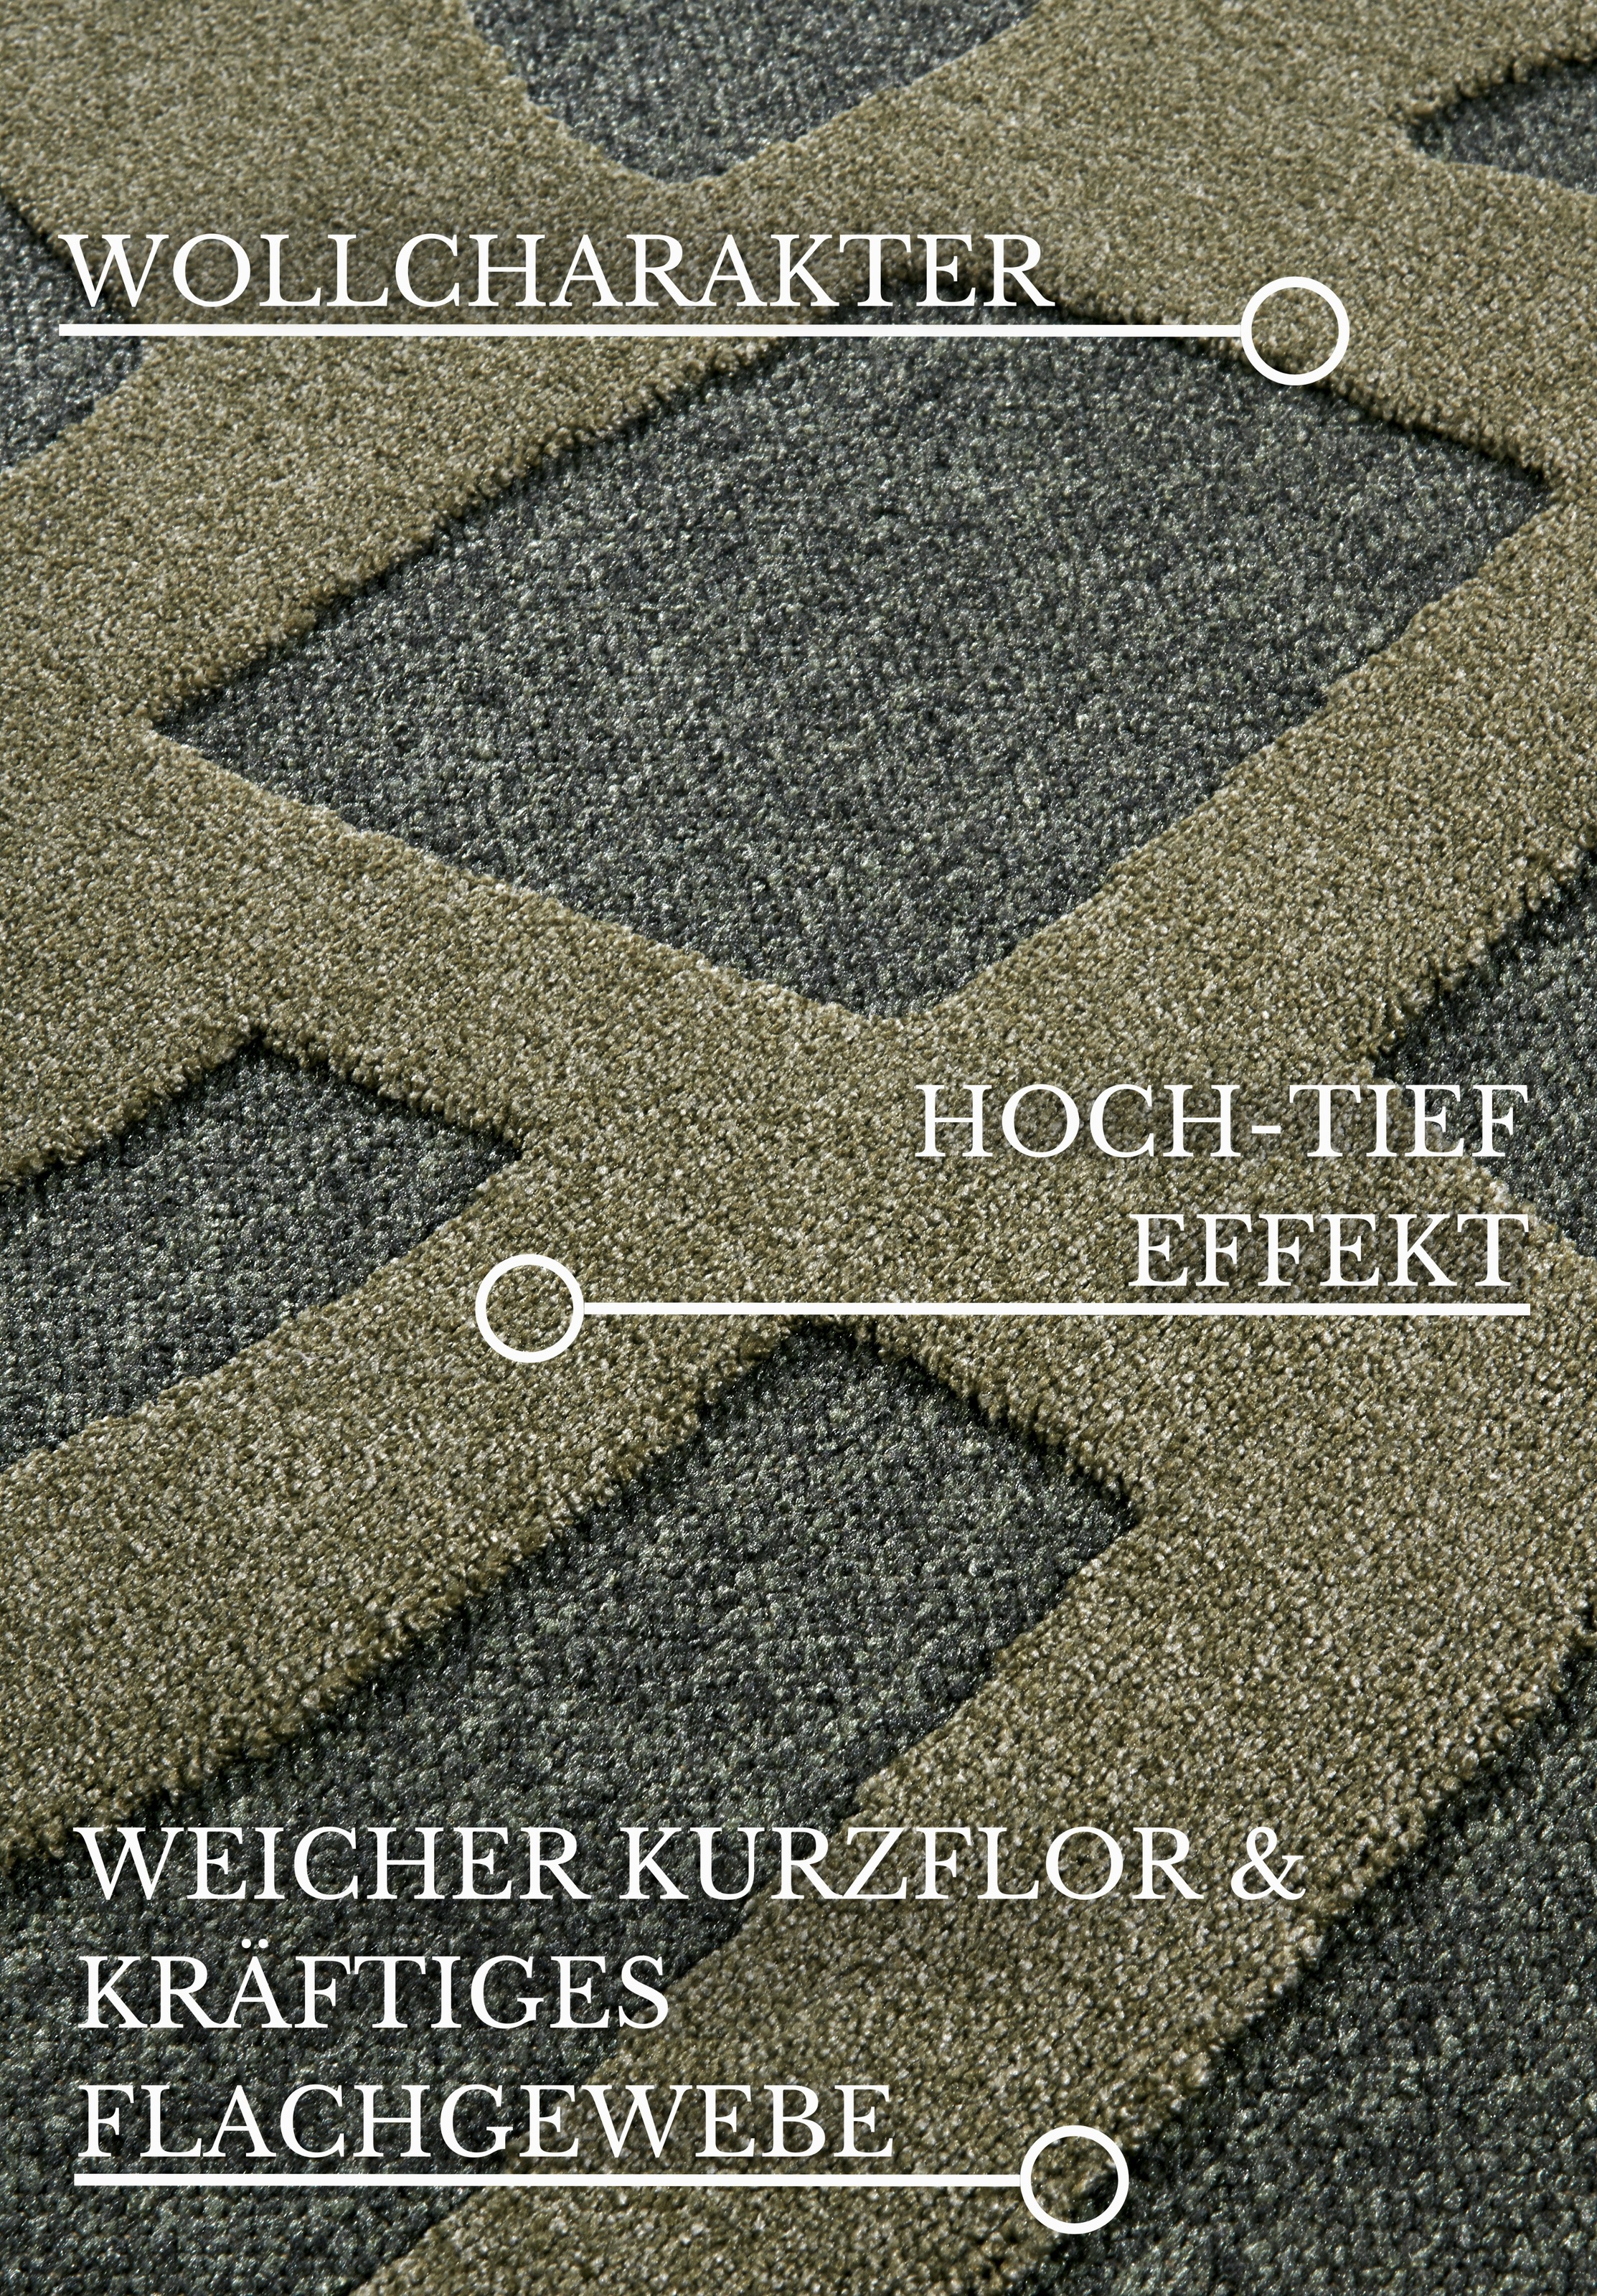 Villeroy & Boch Teppich »Therese«, rechteckig, Nachhaltig, Wohnzimmer, Schlafzimmer, Modern, Hoch-Tief Effekt, Flur